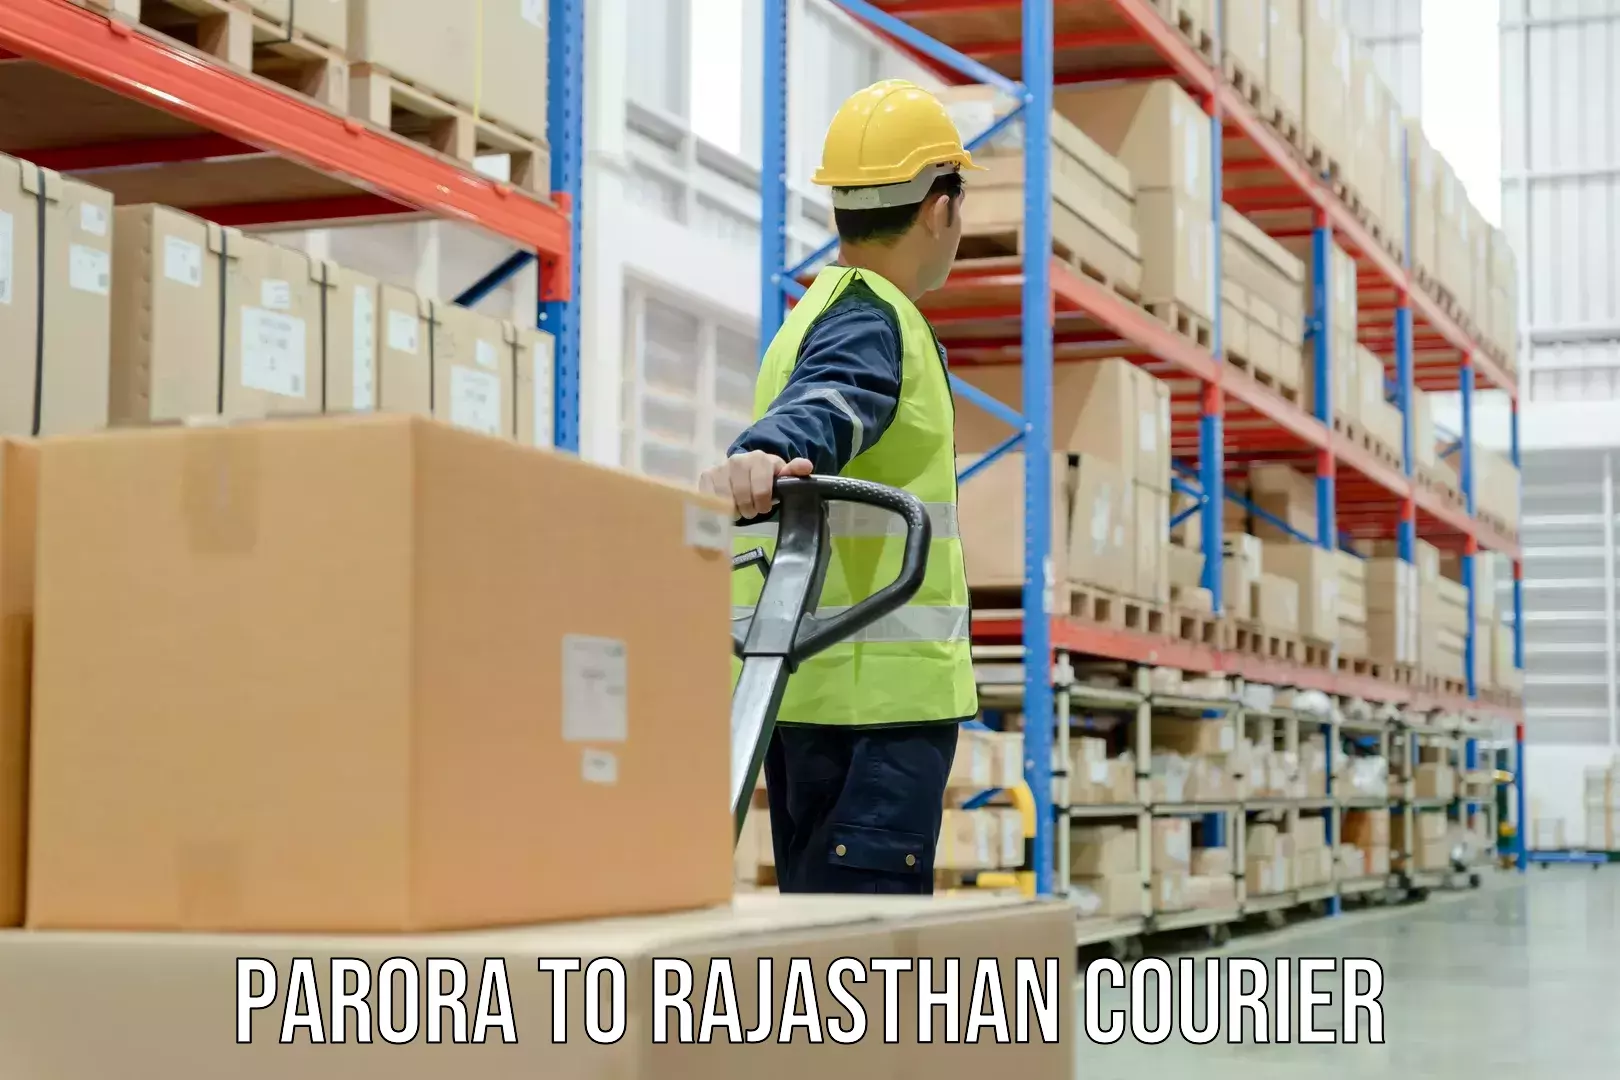 Efficient order fulfillment Parora to Jaipur